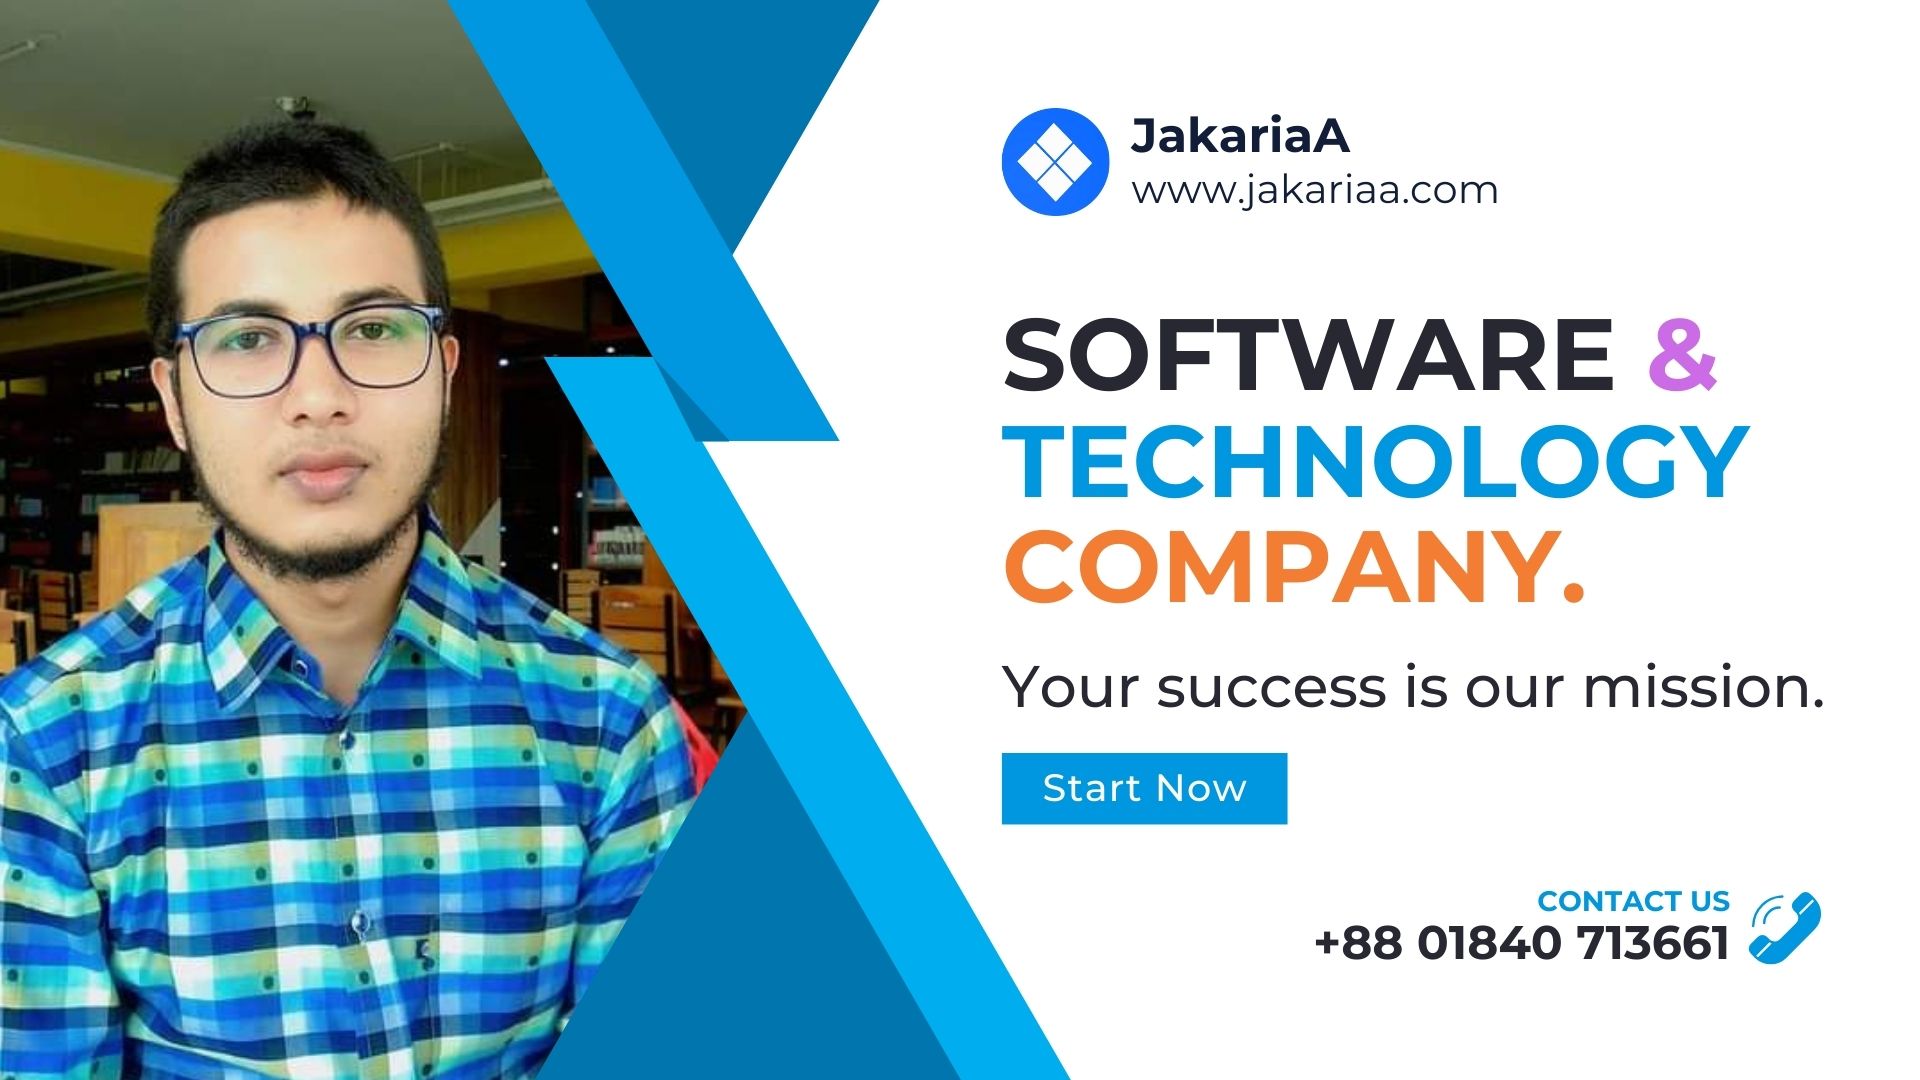 JakariaA Company